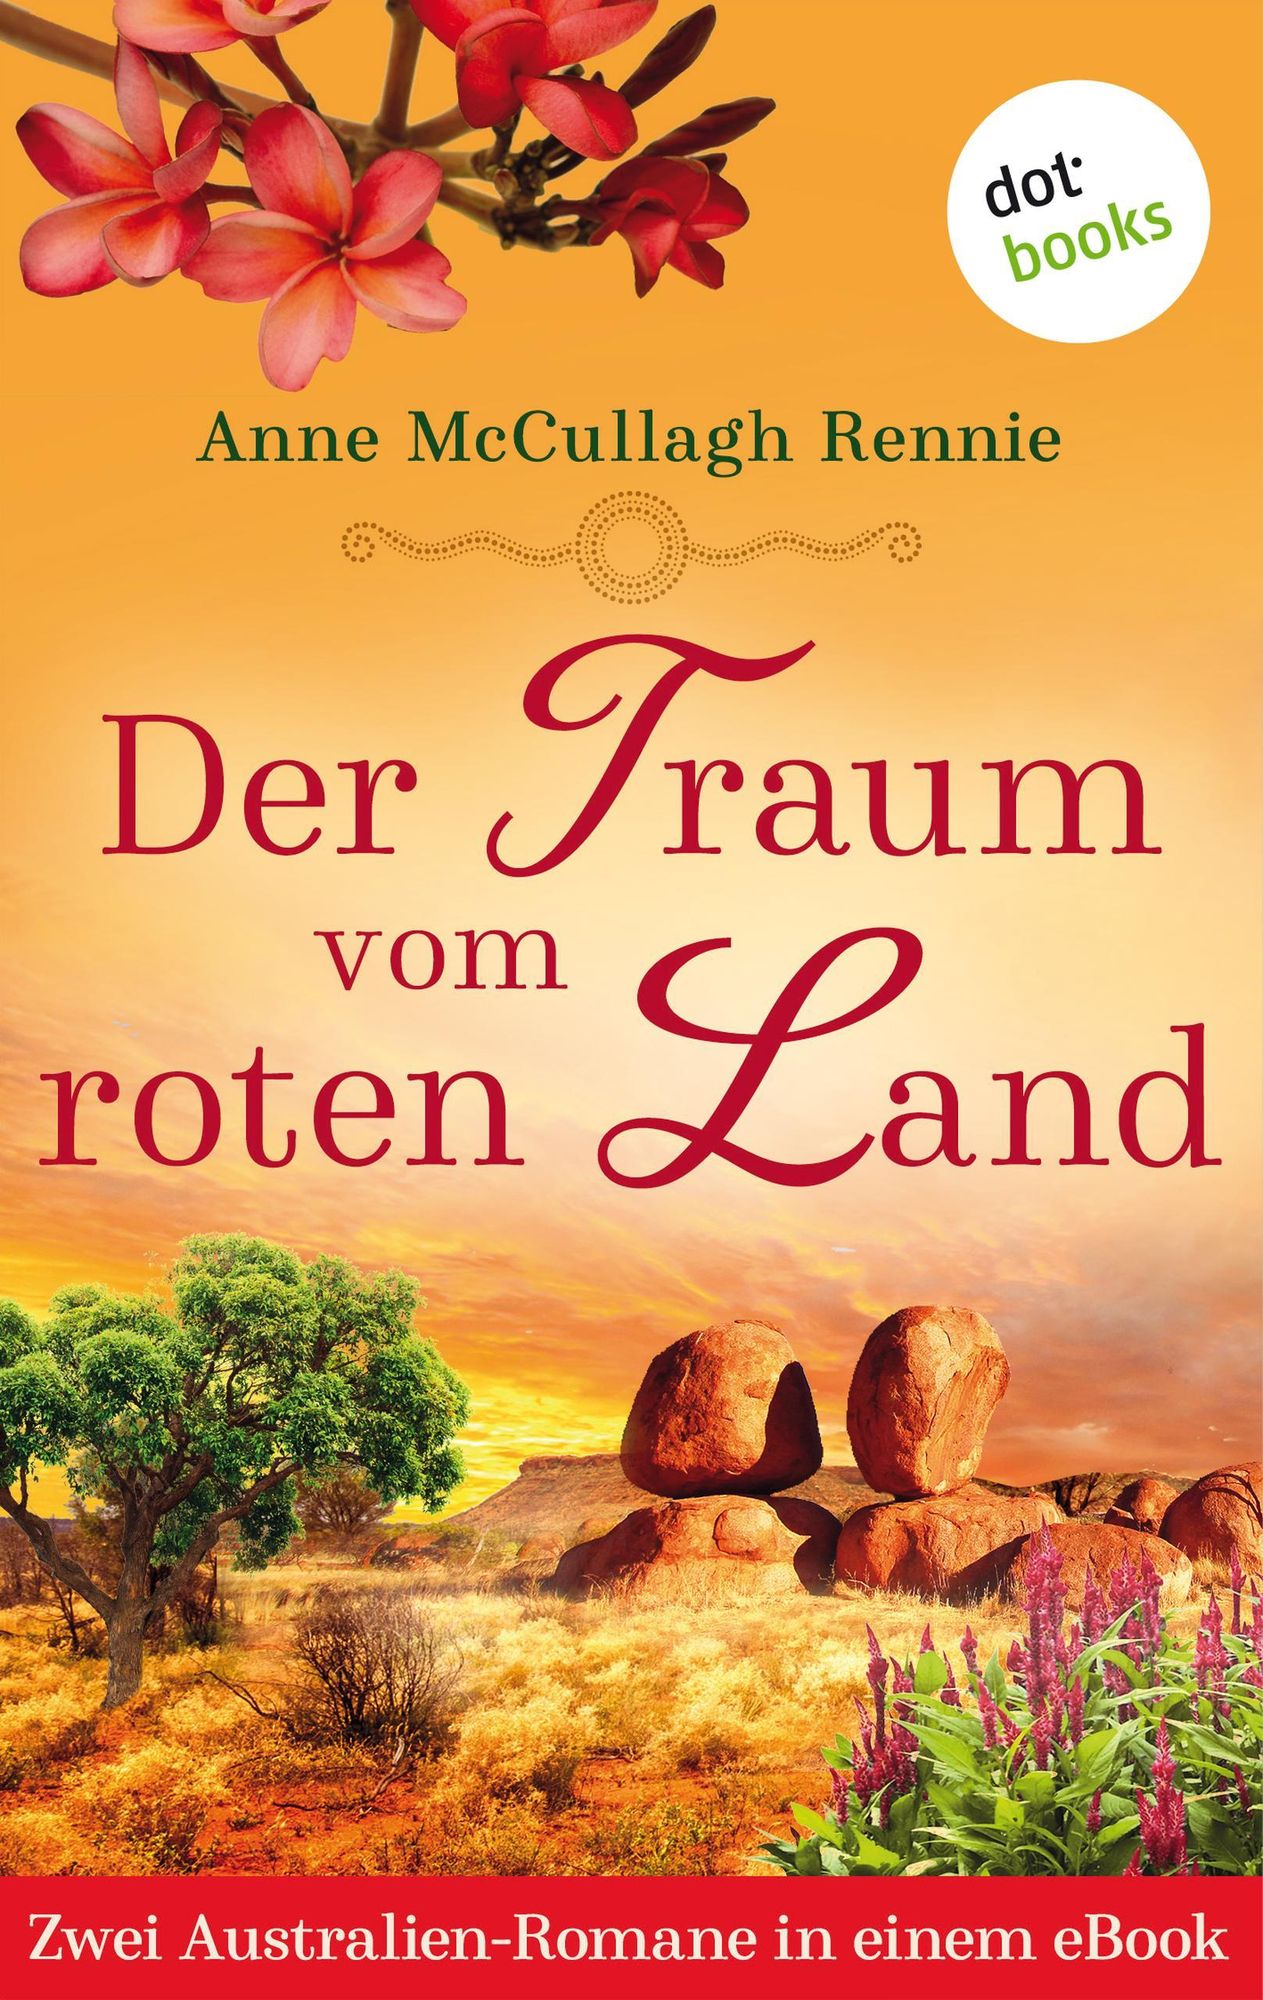 Land'　von　Rennie'　Der　McCullagh　eBook　roten　vom　Traum　'Anne